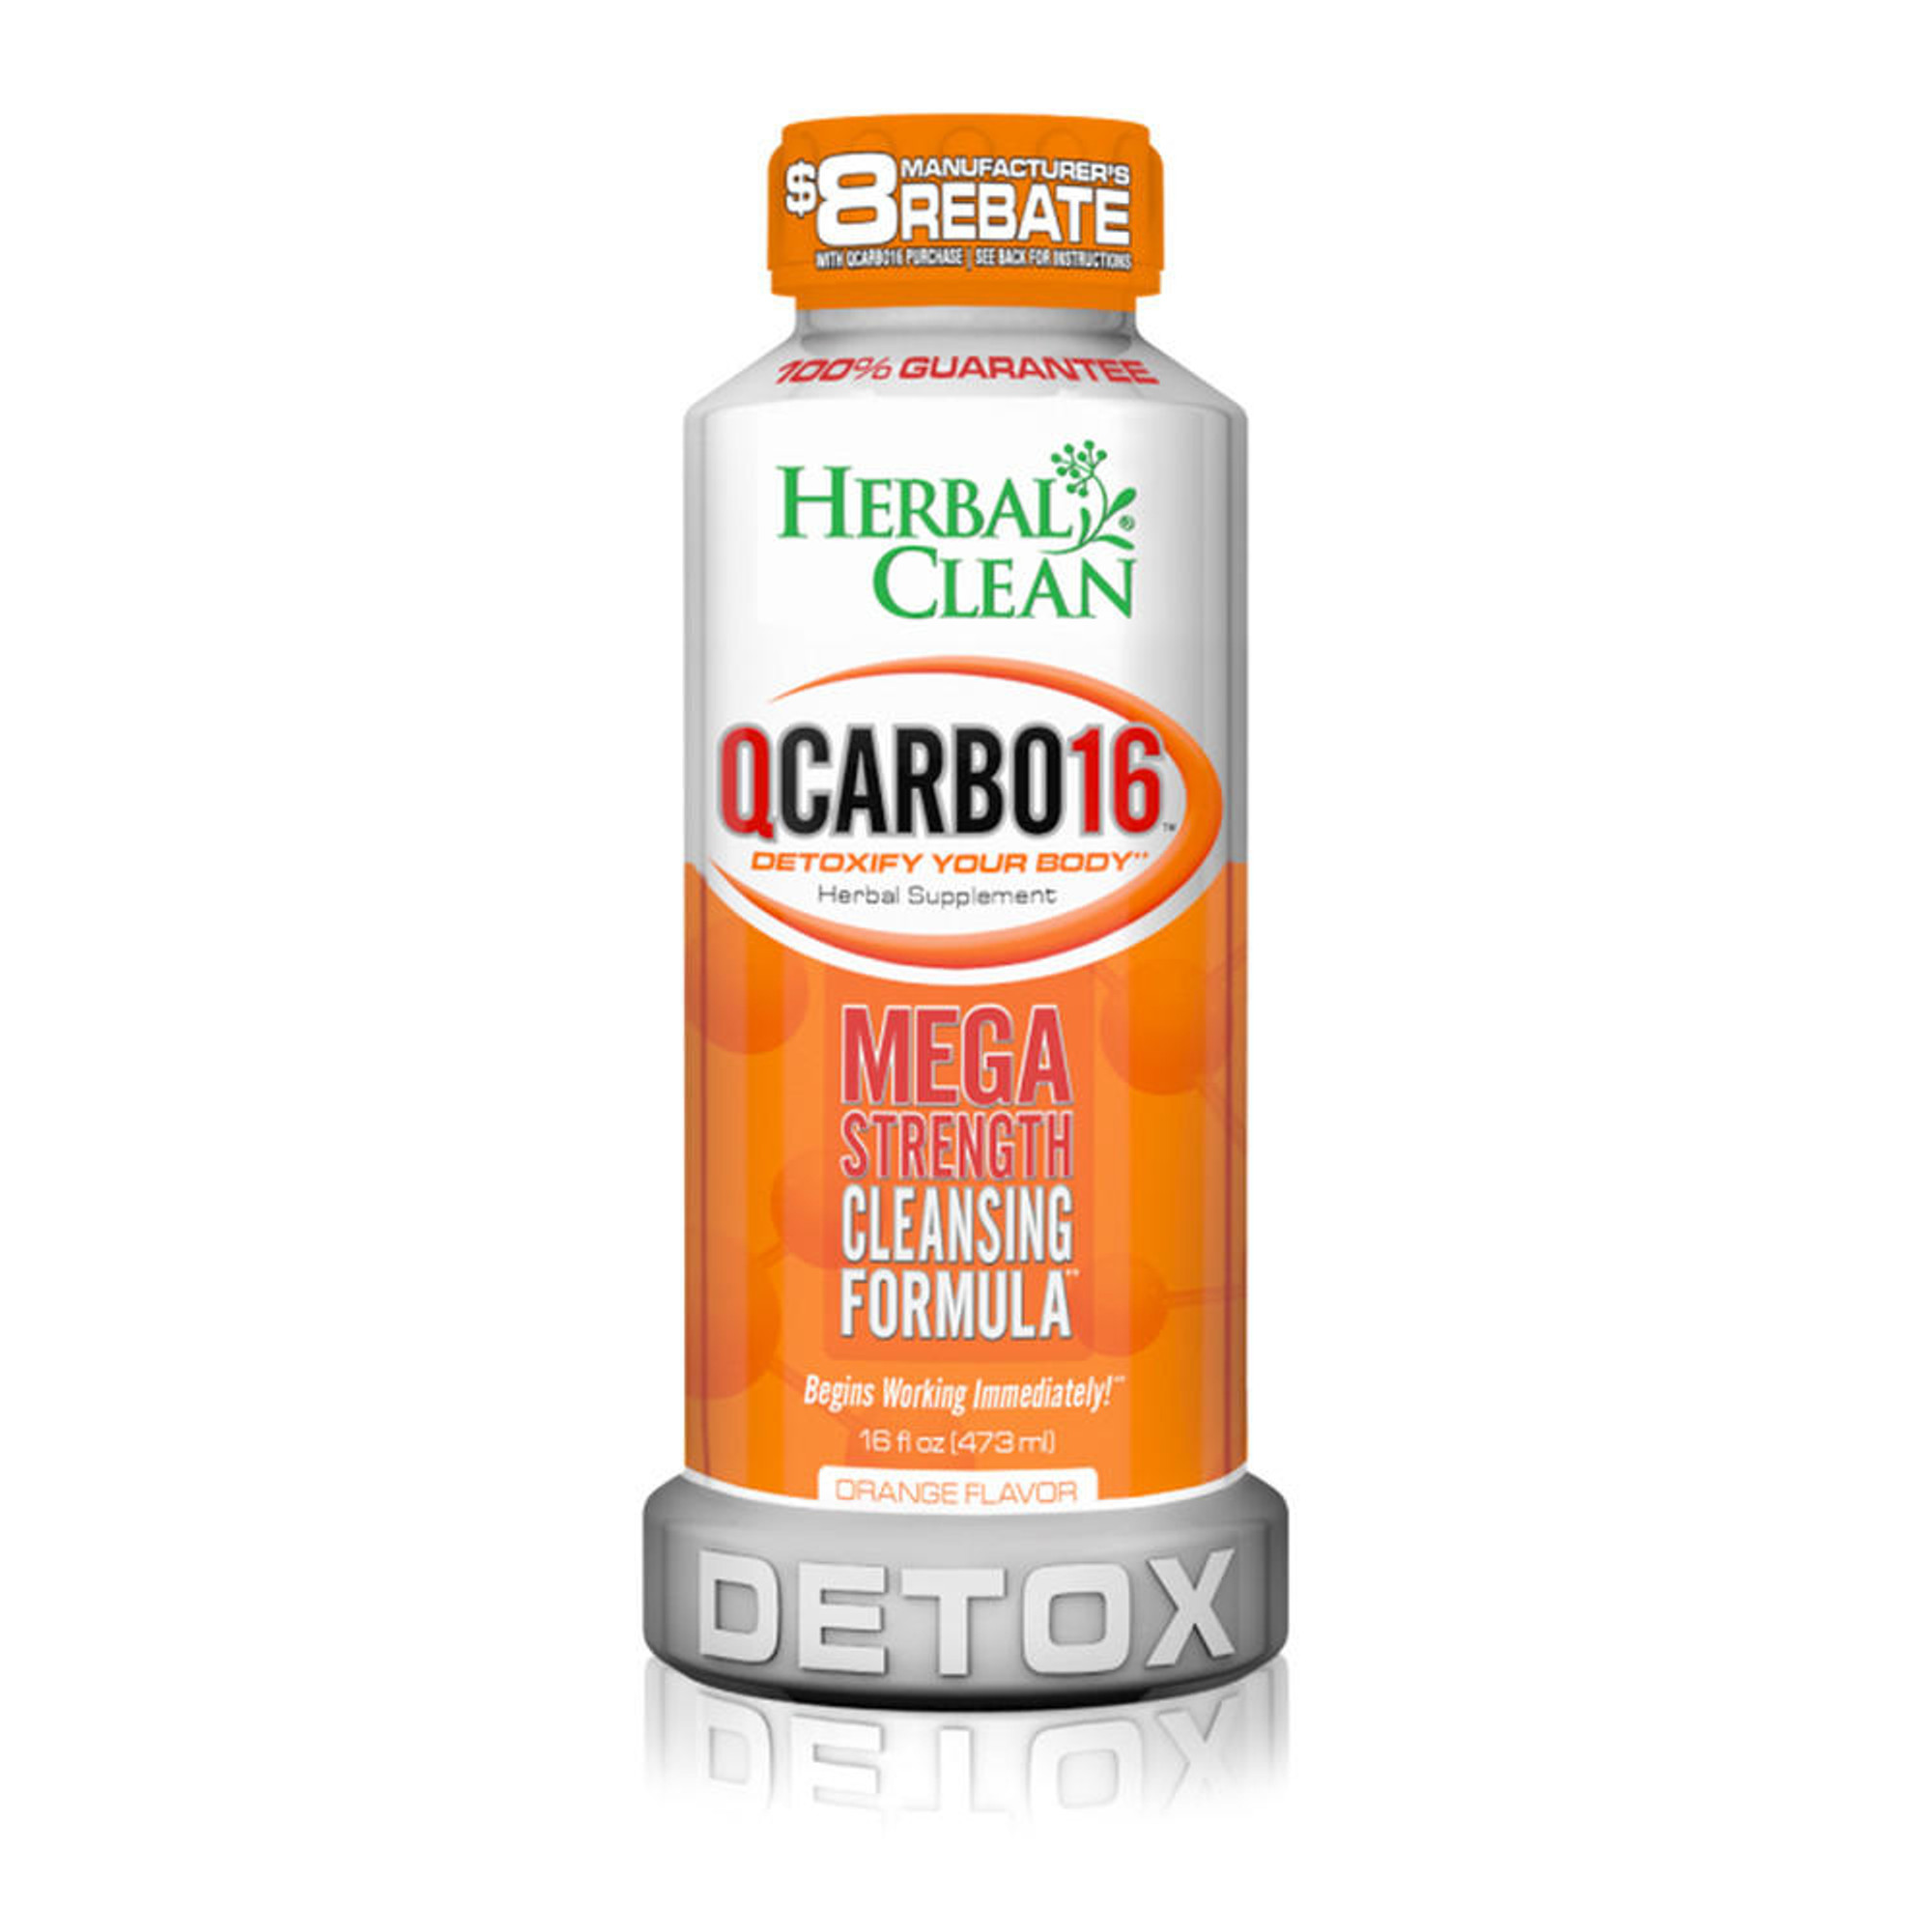 Detoxify Detox Ready Clean, Orange, 16 Oz